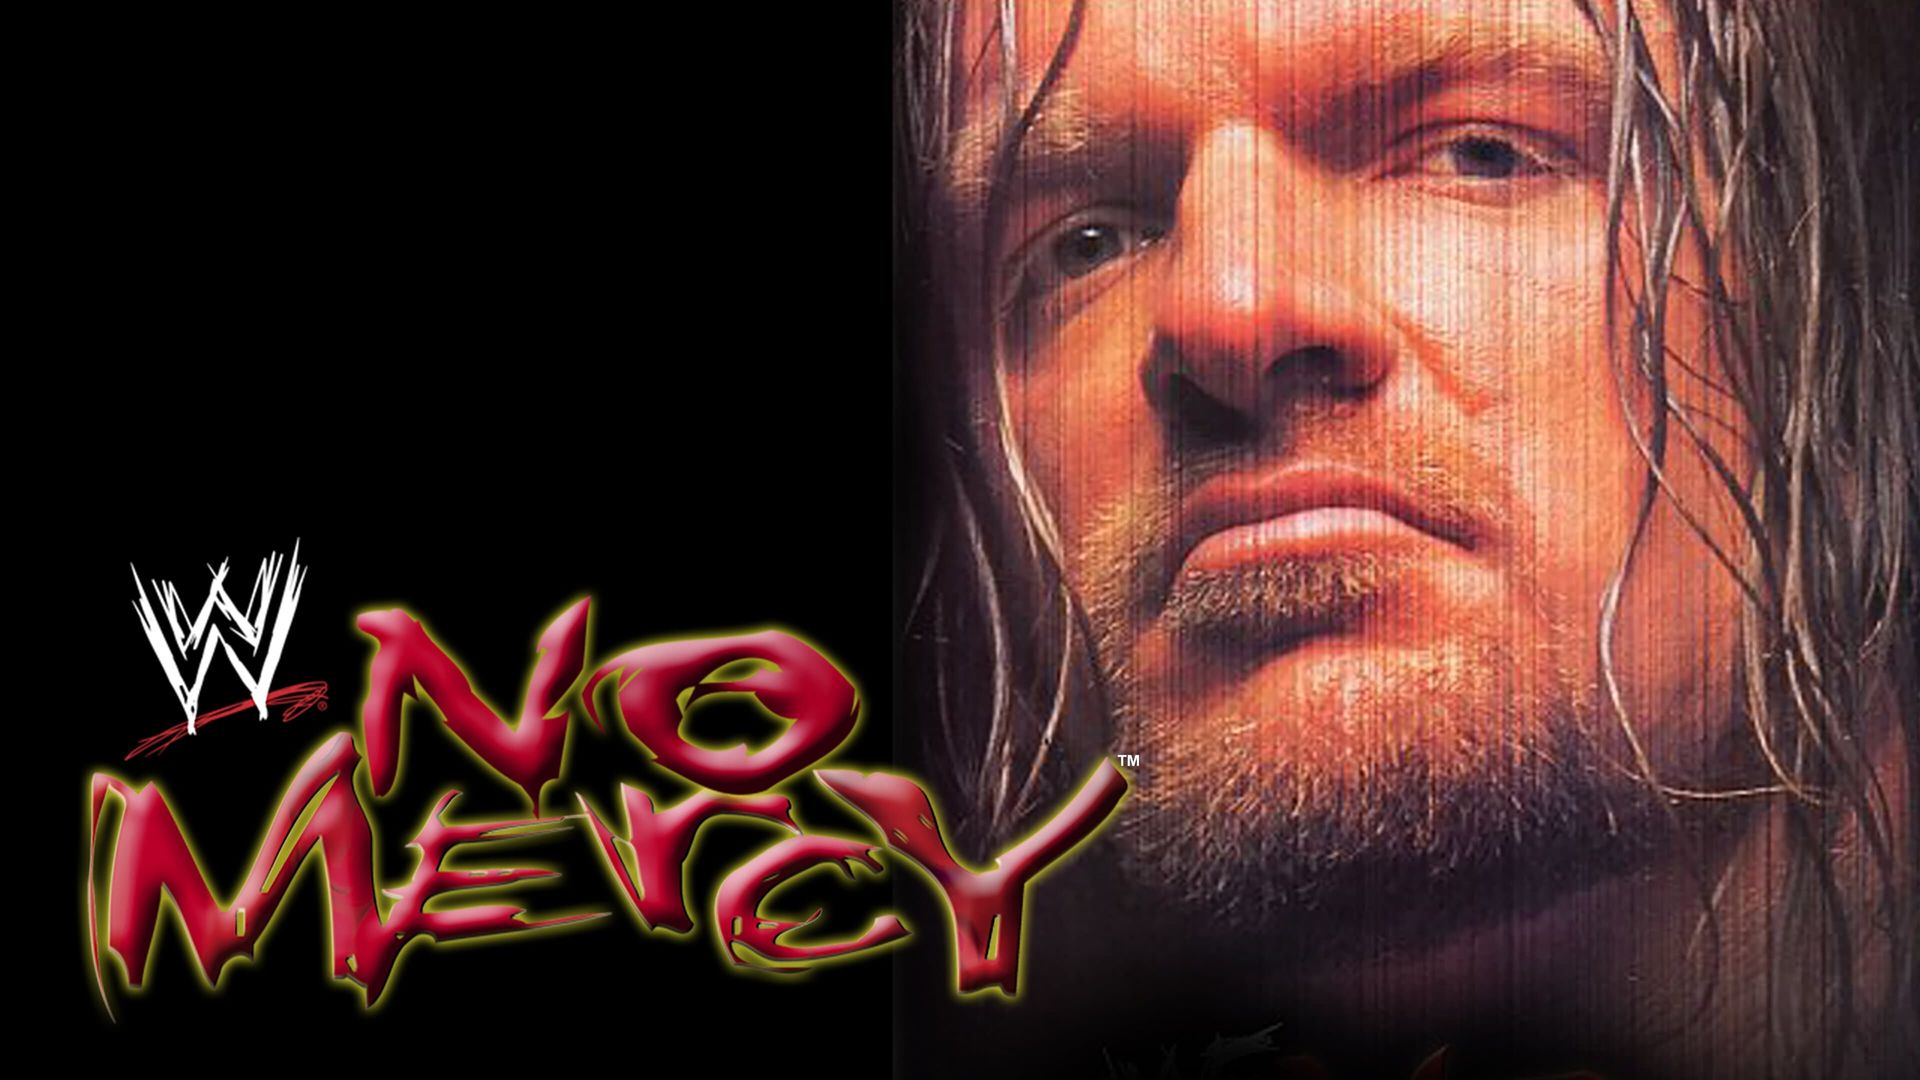 WWF No Mercy background